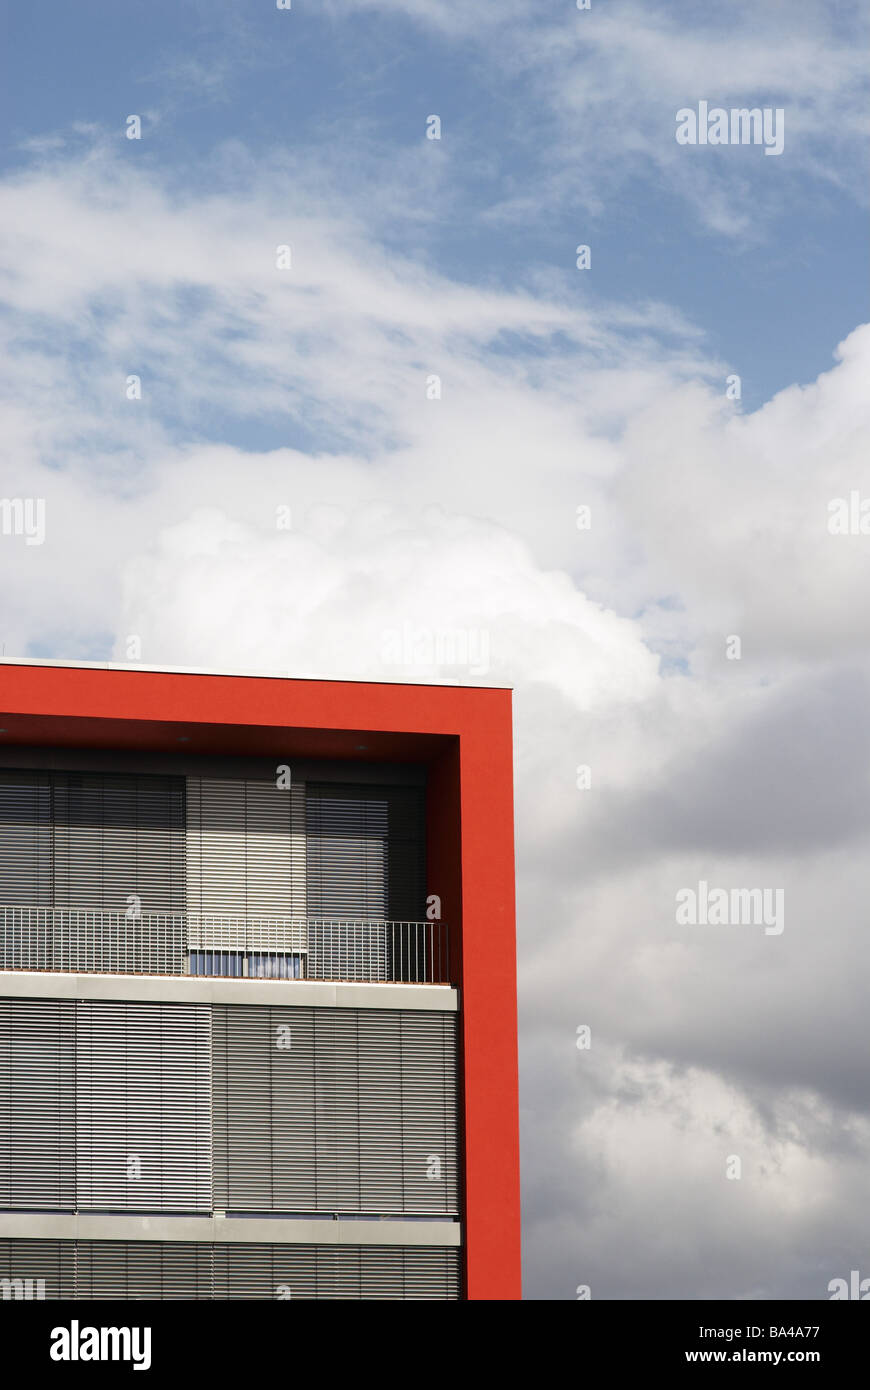 La facciata della casa dettaglio red Kubus windows veneziana chiuso nuvole cieli 03/2006 architettura costruzione esterno costruisce Foto Stock